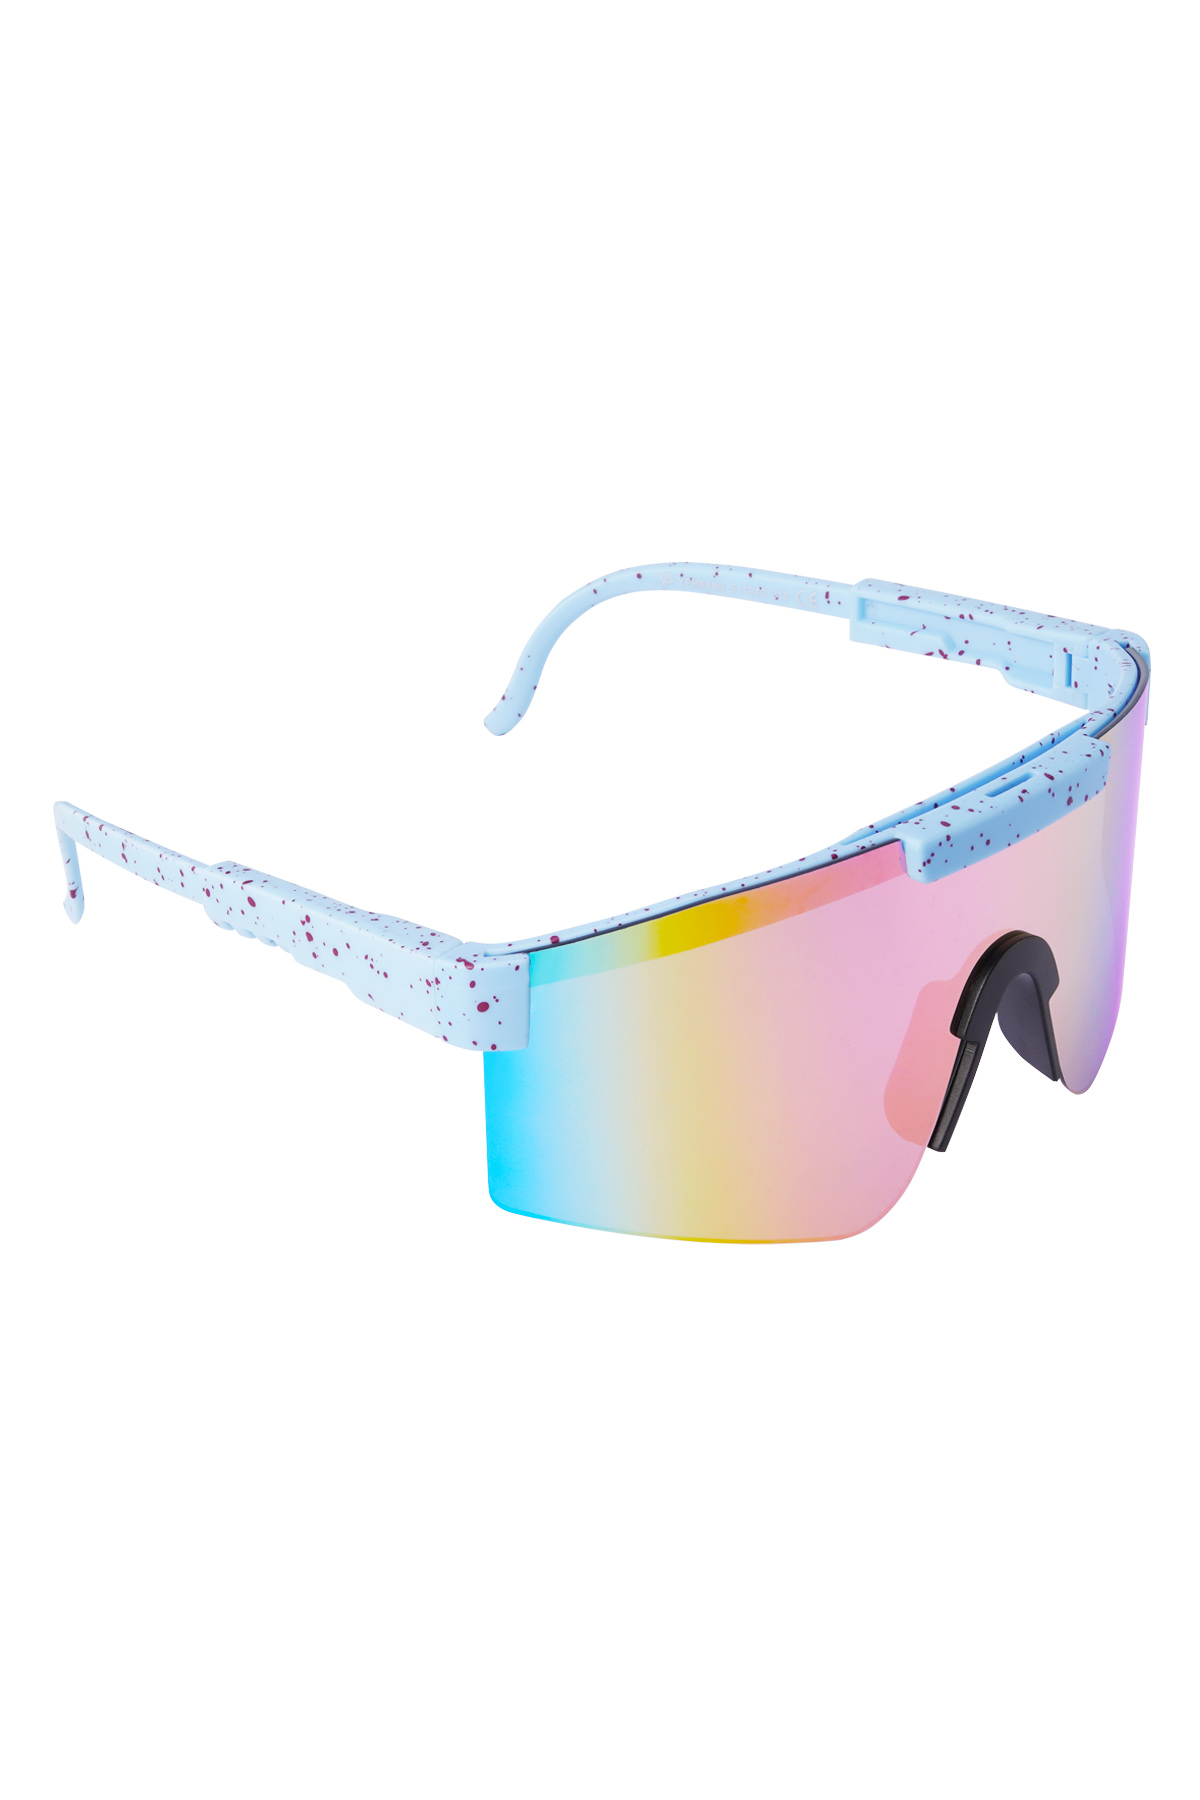 Gafas de sol con lentes de colores estampados - azul h5 